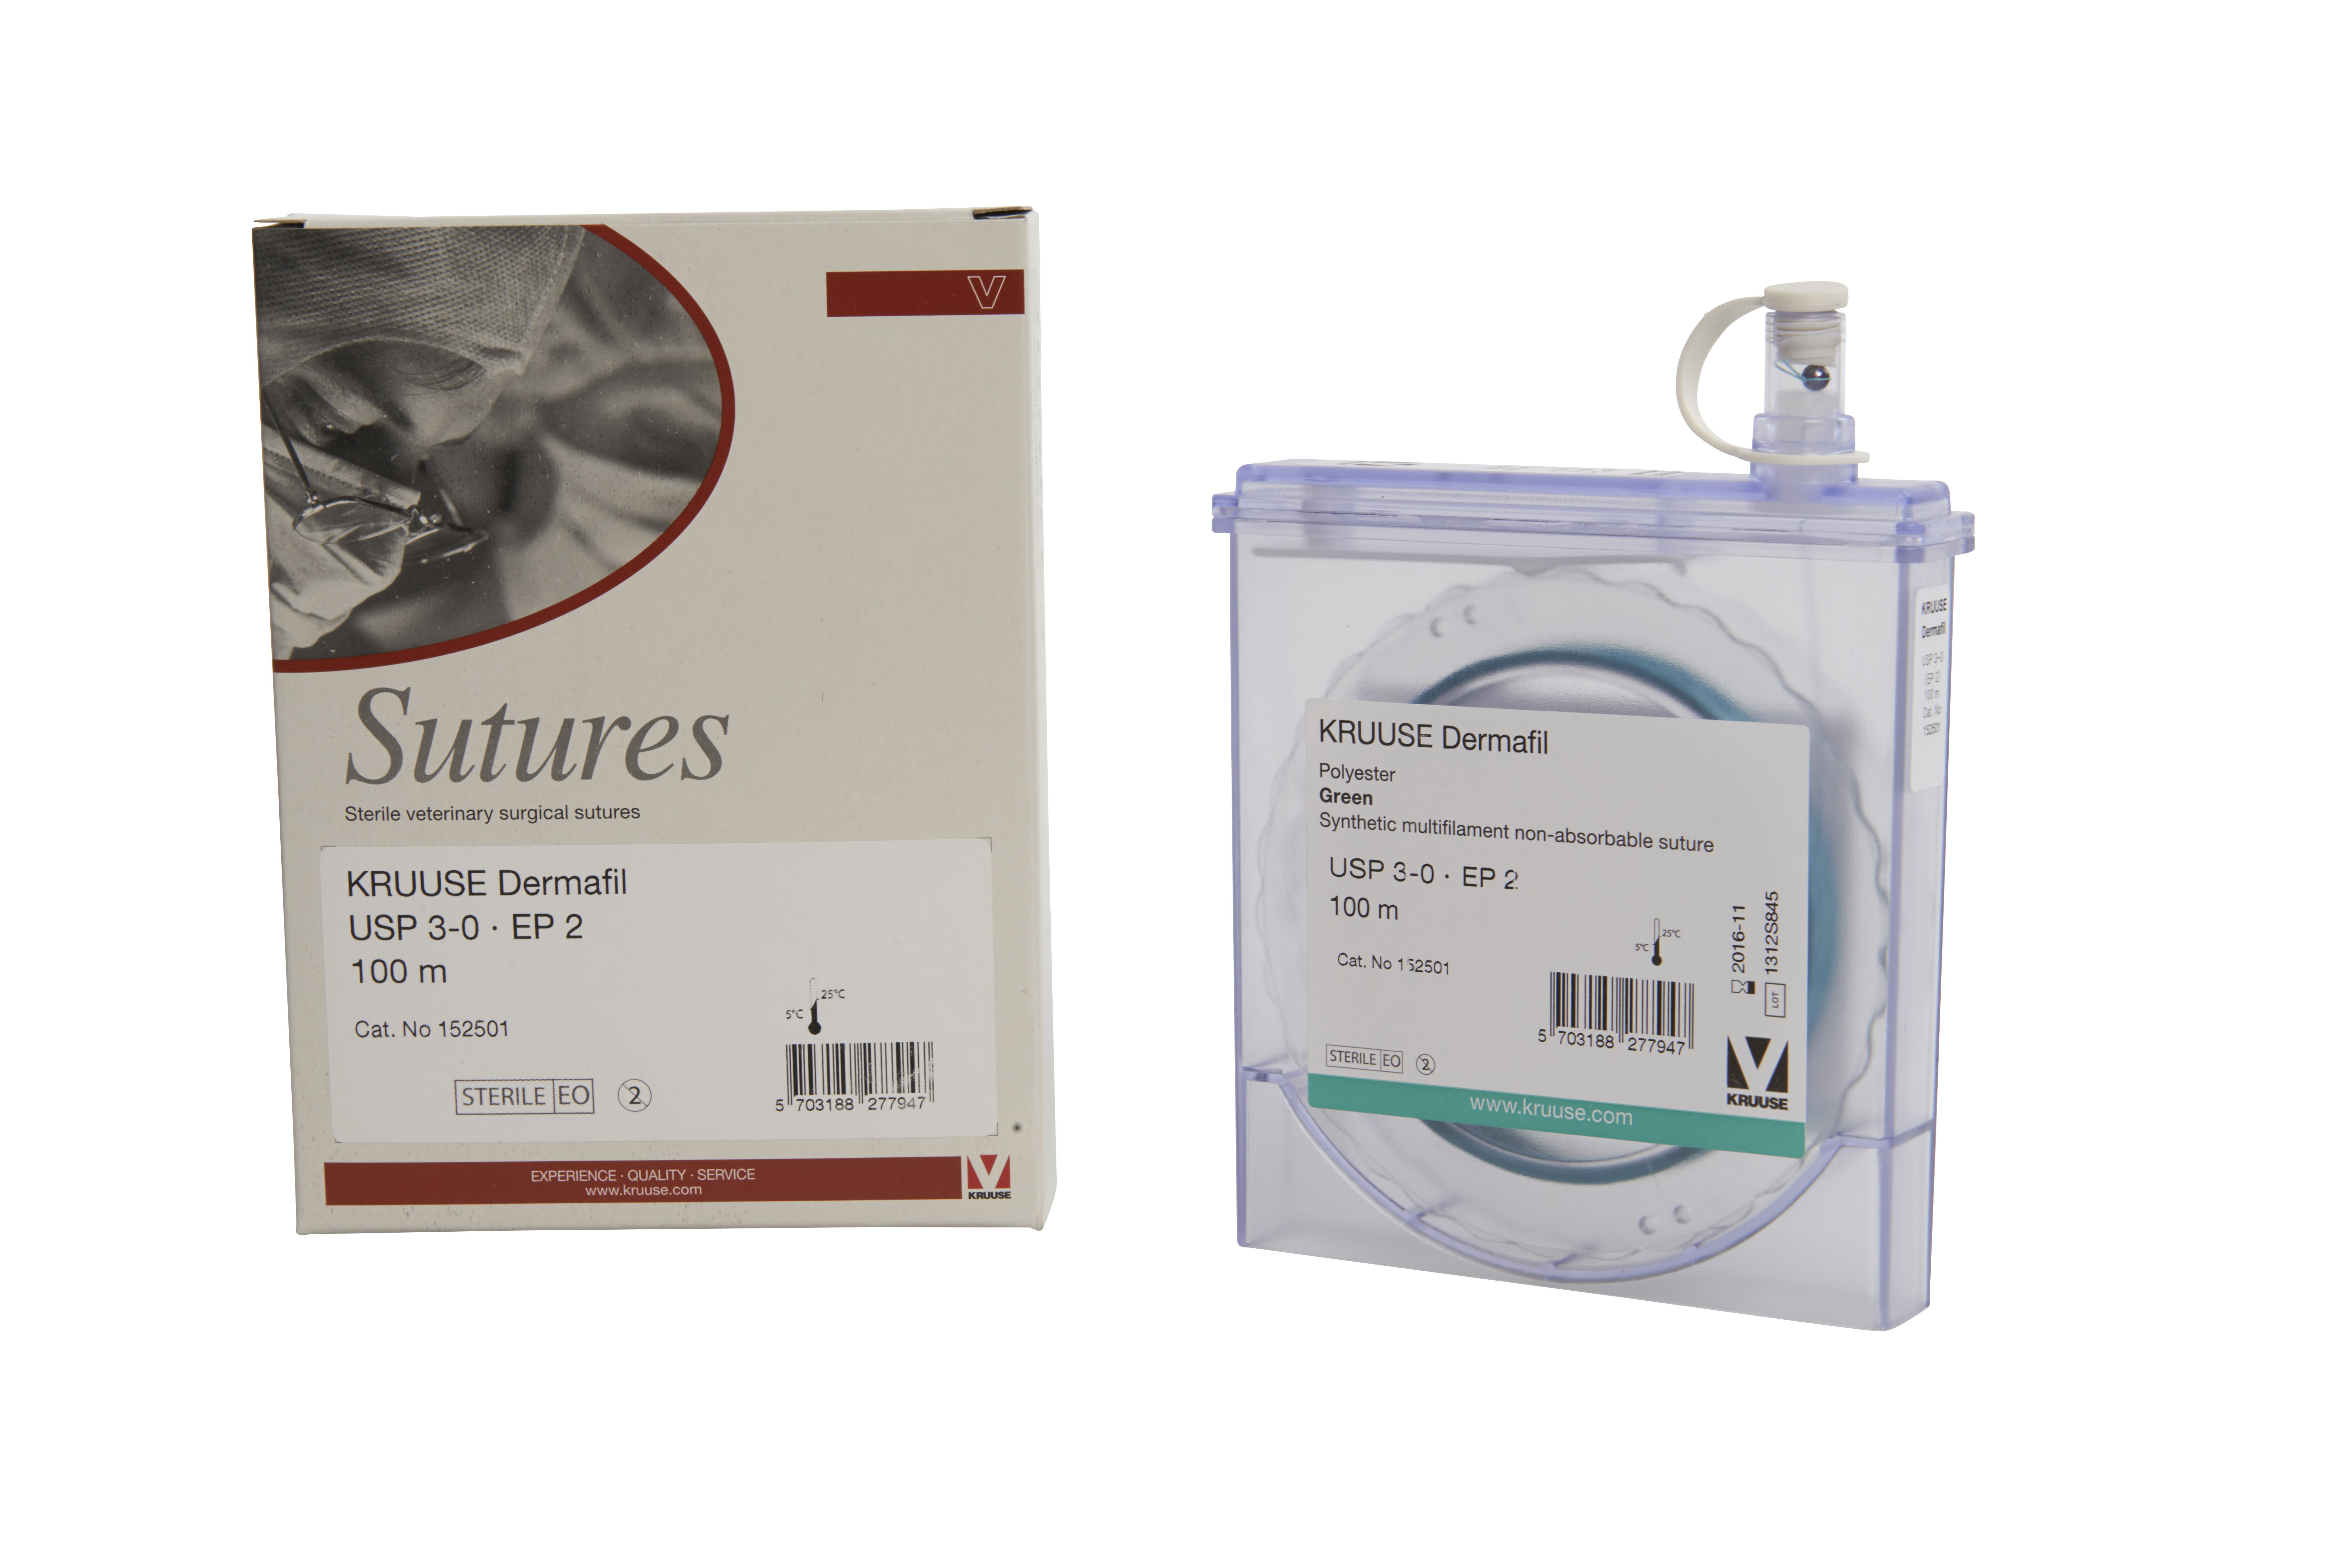 KRUUSE Dermafil suture, USP 3-0, EP 2, 100m